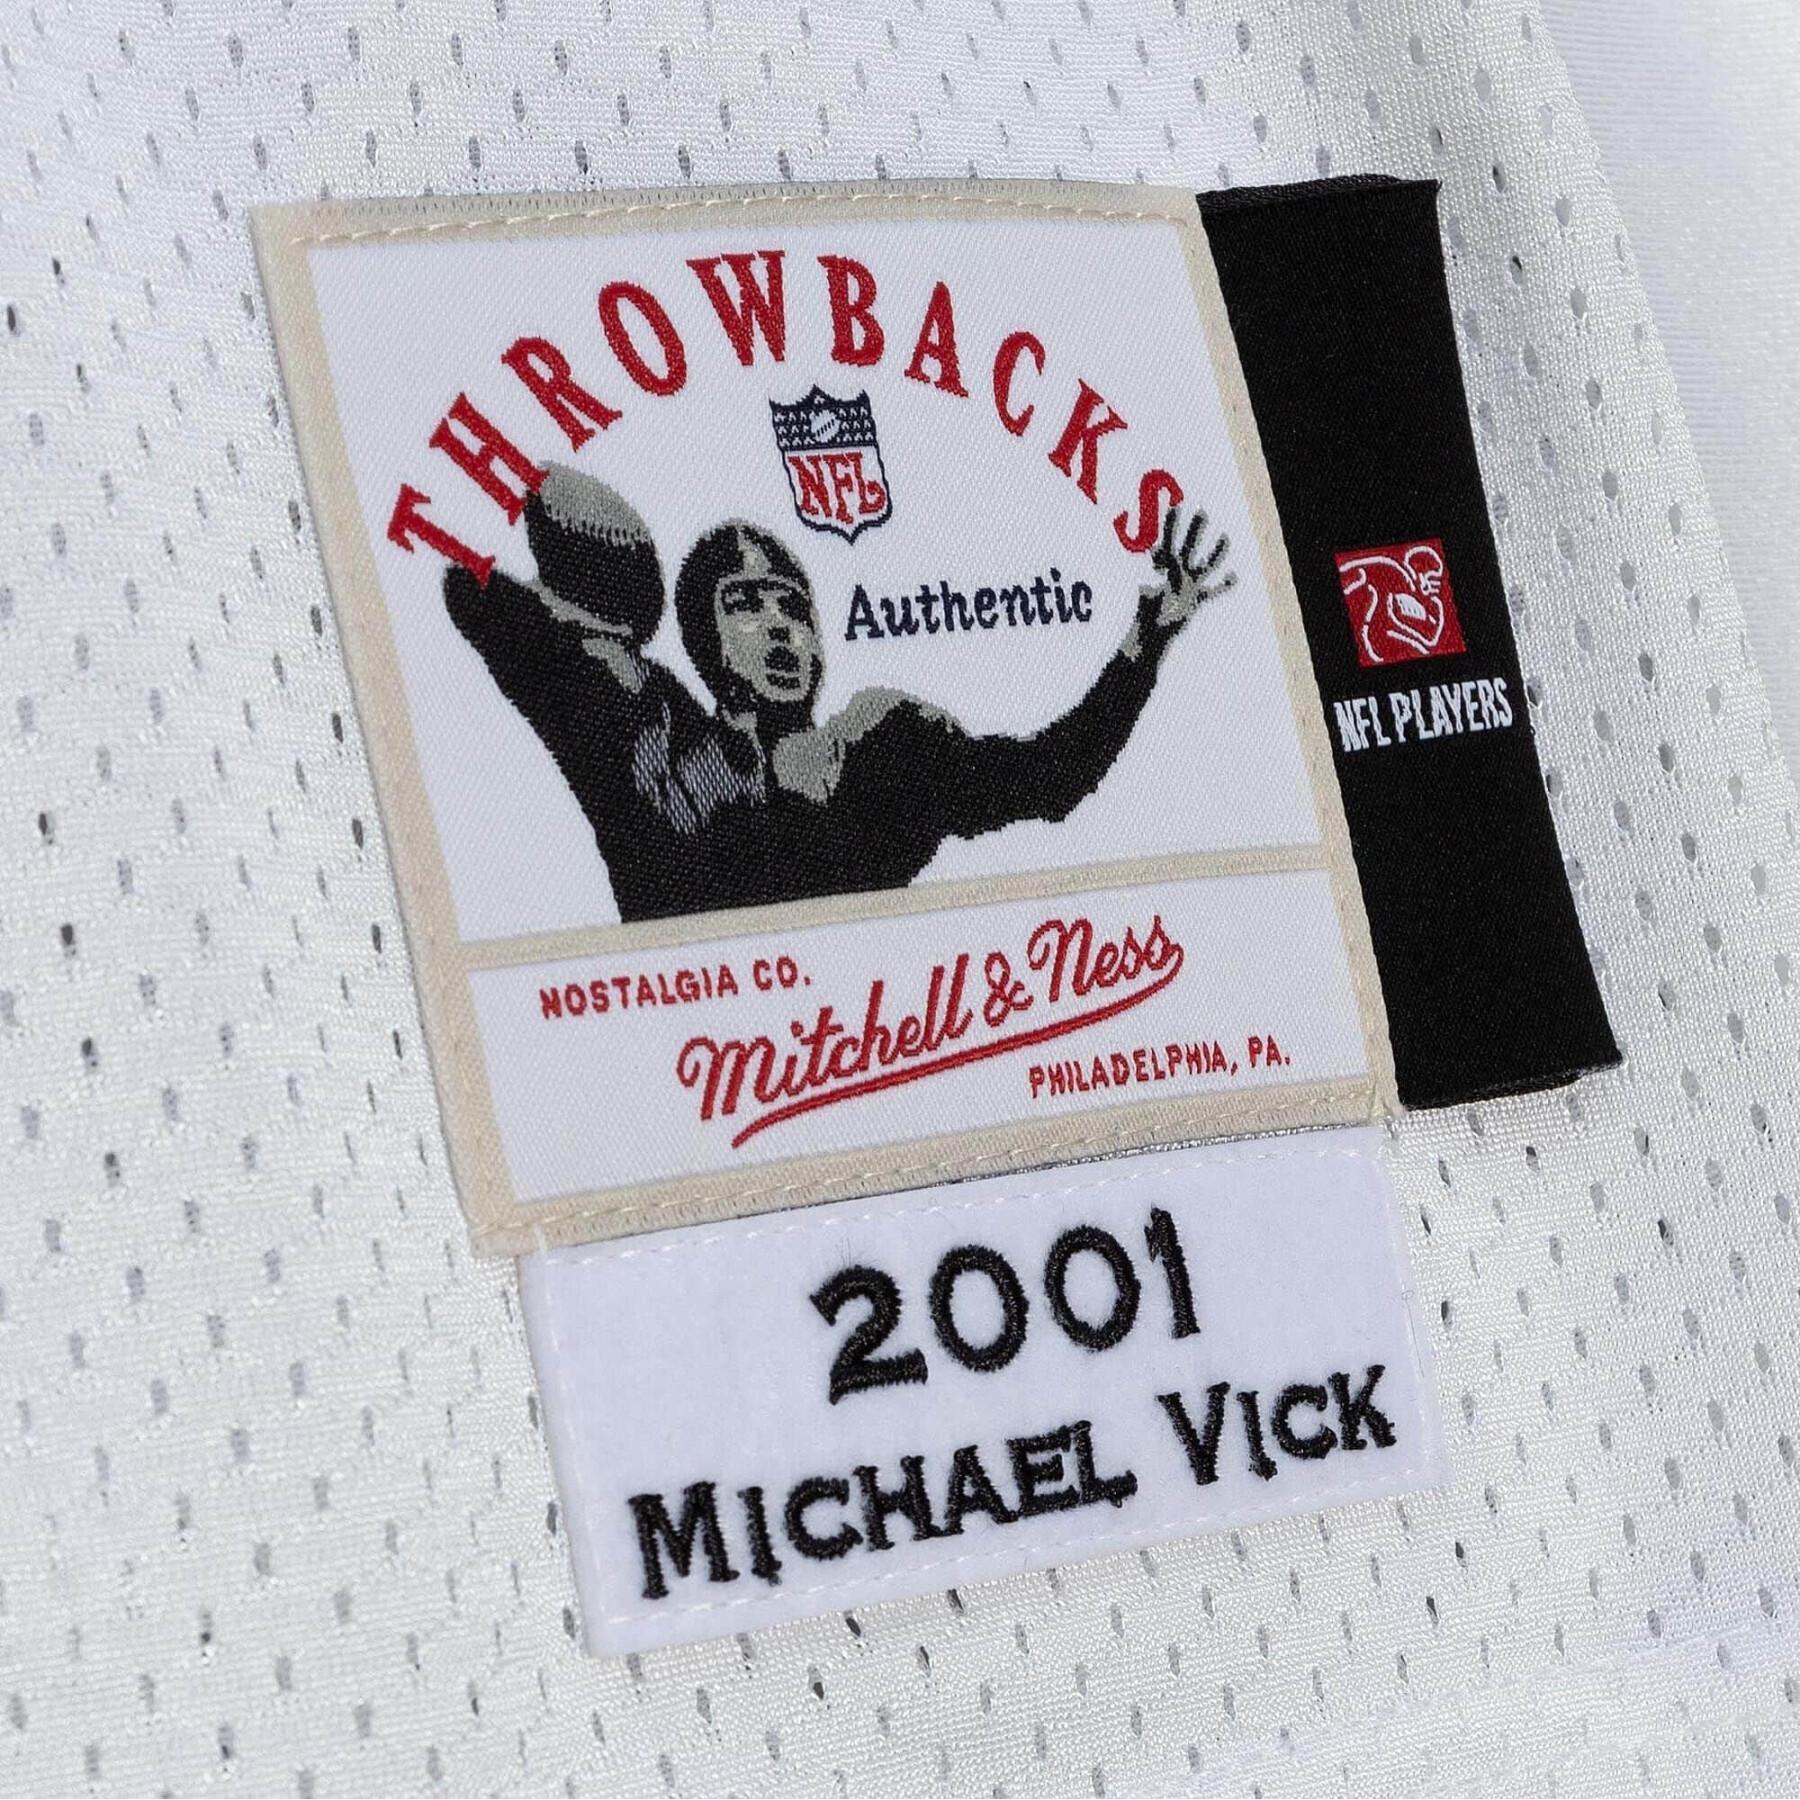 Camisola autêntica Falcons Michael Vick 2001